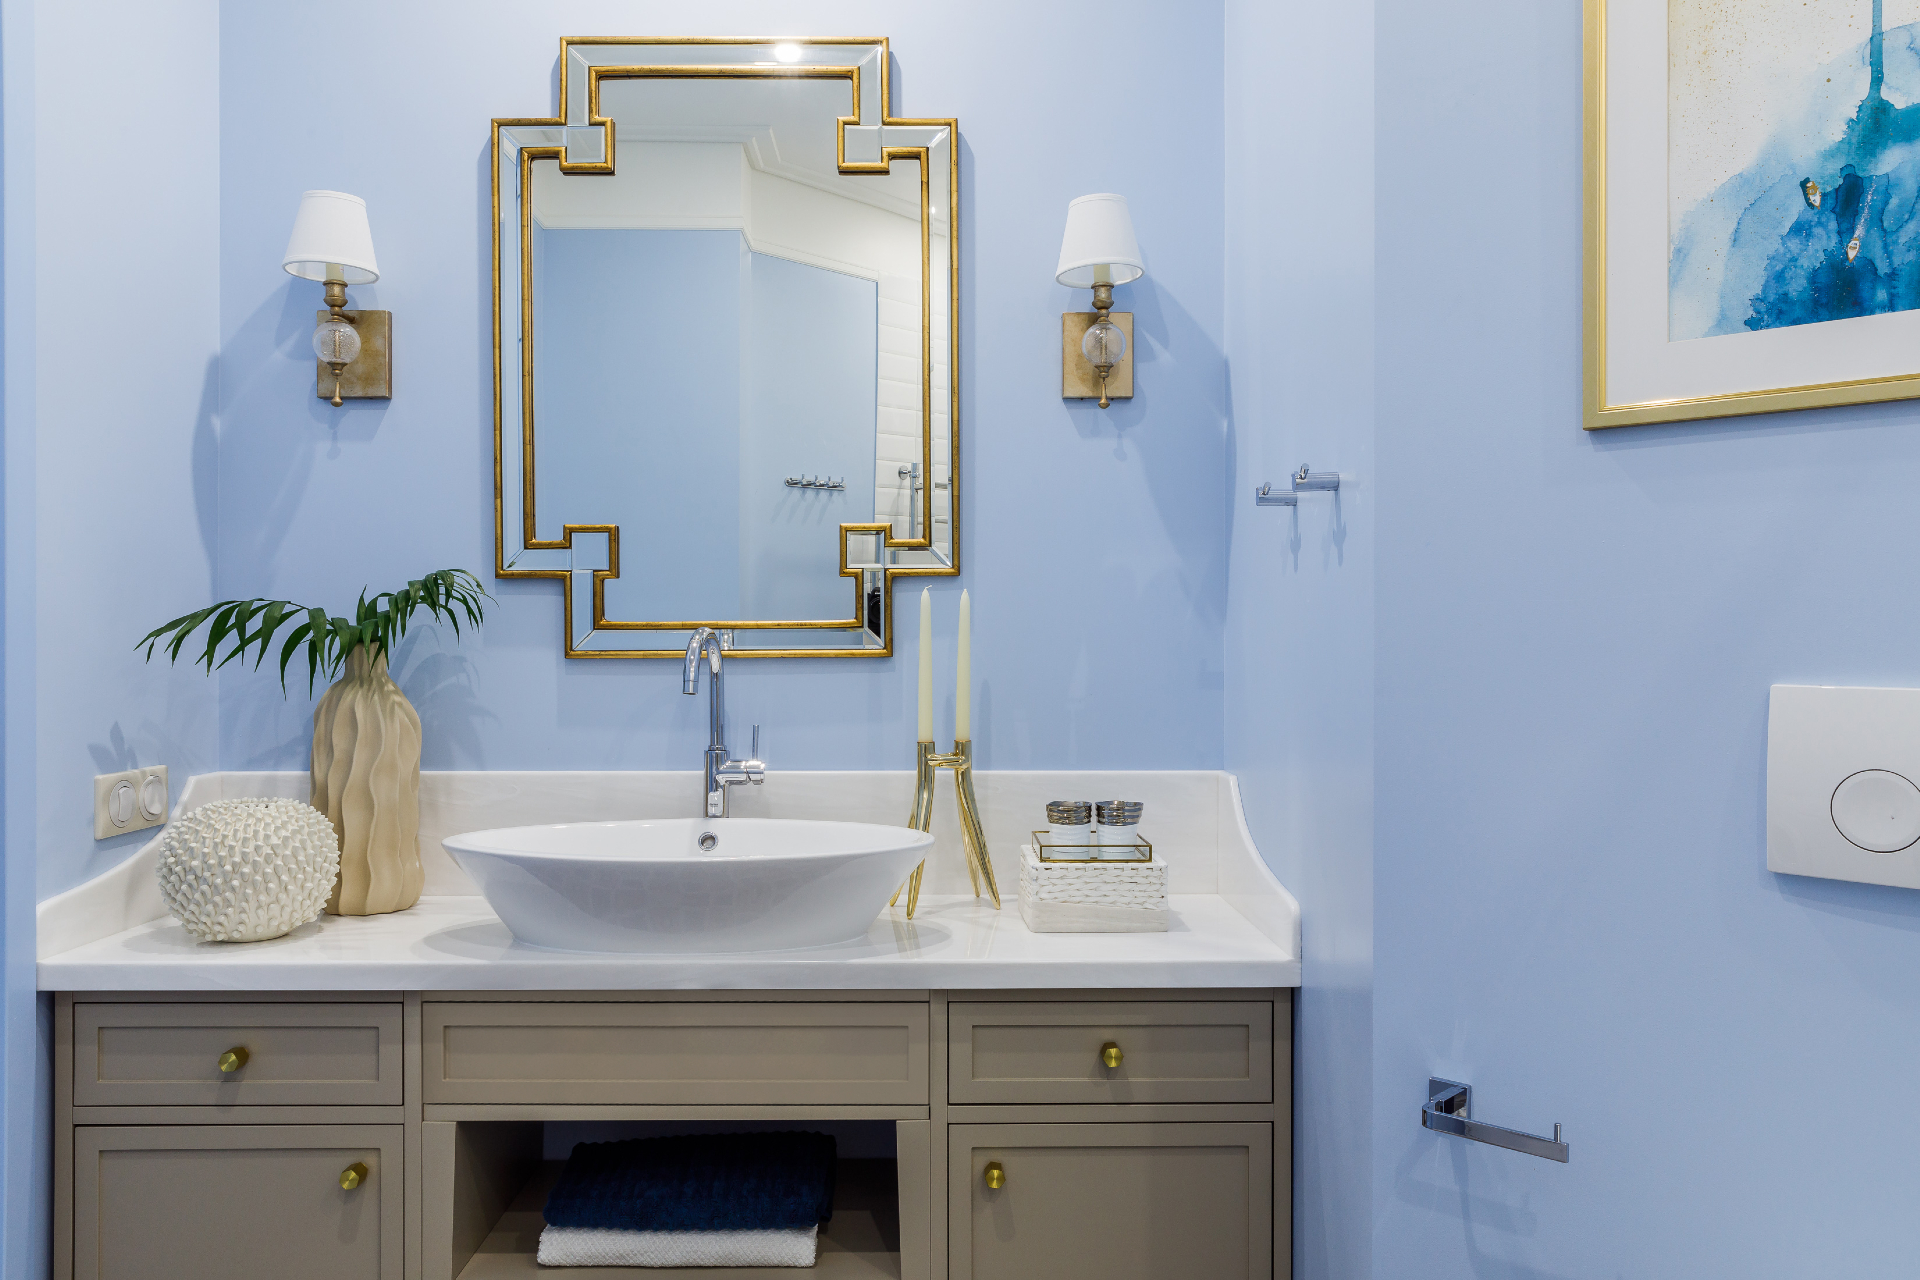 В небольших ванных комнатах фацеты на зеркале дадут больше света и пространства. Еще одно решение &mdash; чередовать зеркальную плитку с фацетом с керамической